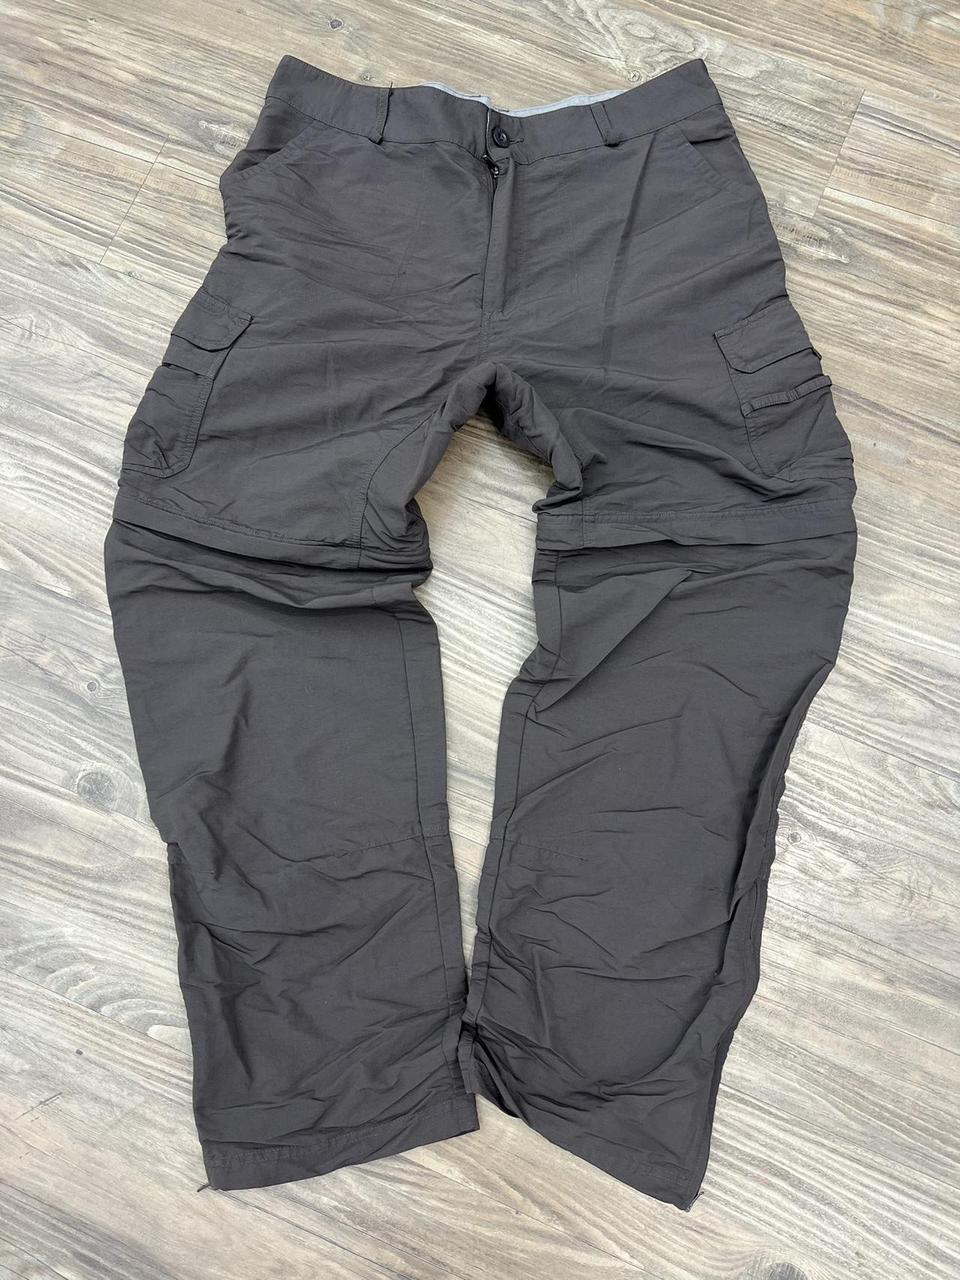 Cabela’s Pants with Zip Away Legs Sz. 36 x... - Depop